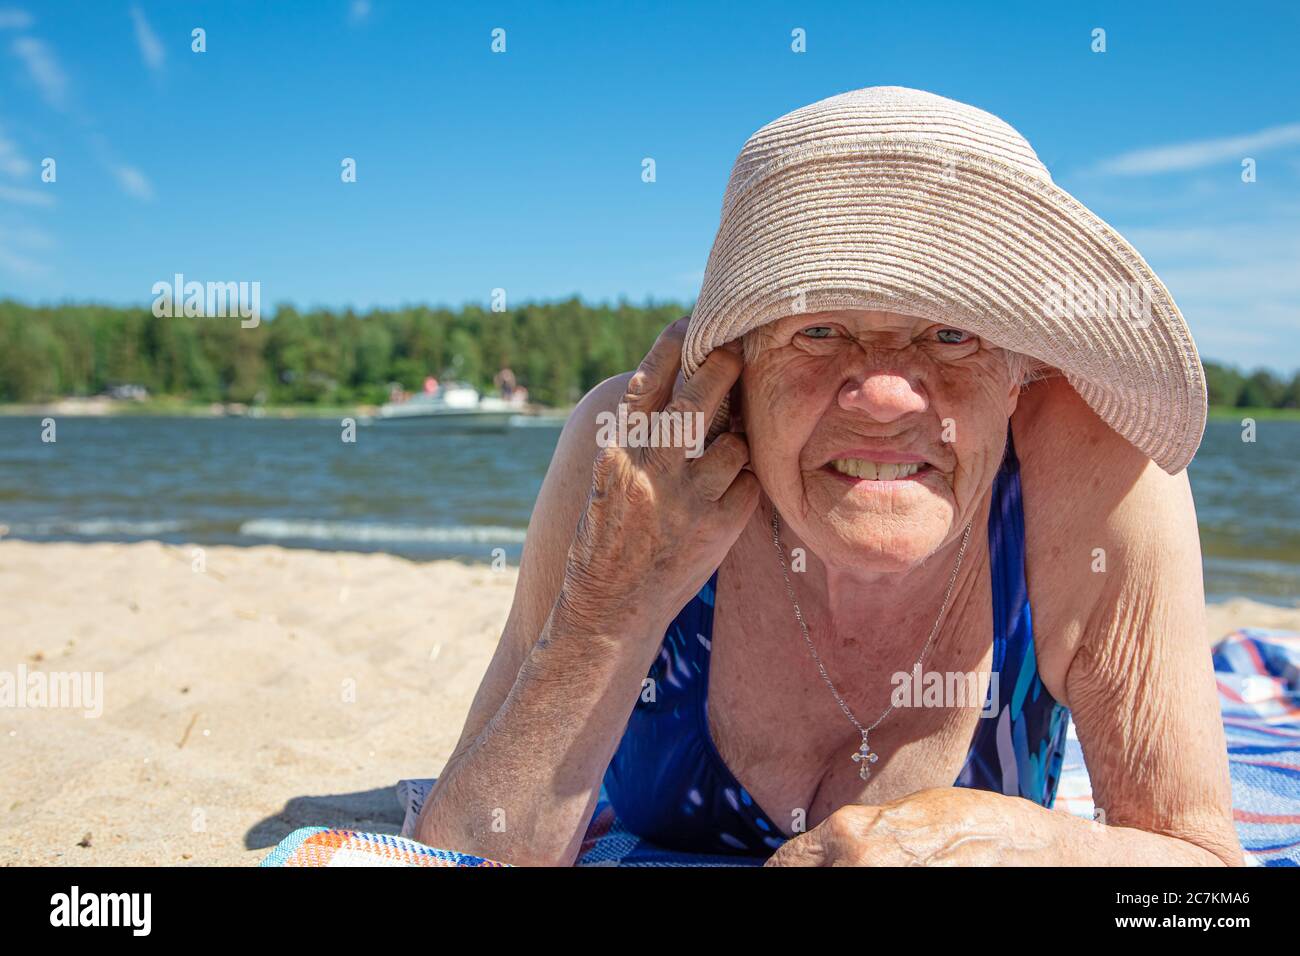 Vieille femme, dans un chapeau d'été et un maillot de bain sur la plage.  Ensoleillé, jour d'été au bord de la mer. Concept: Un mode de vie sain.  Photo de haute qualité